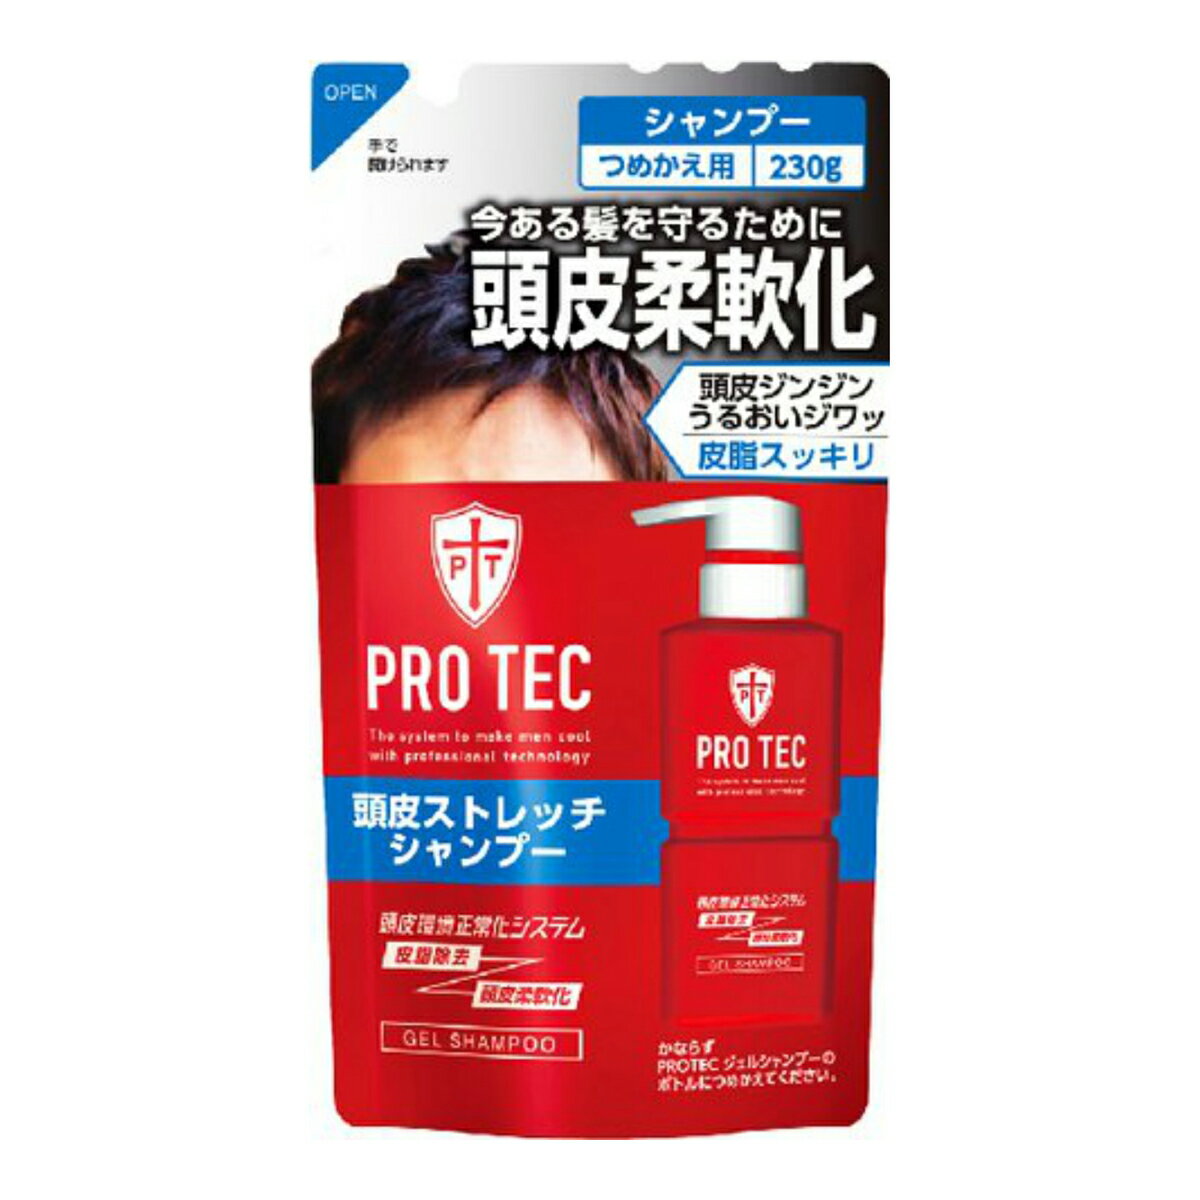 ライオン PRO TEC ( プロテク ) 頭皮ストレッチ シャンプー つめかえ用 230g ( 4903301231189 )